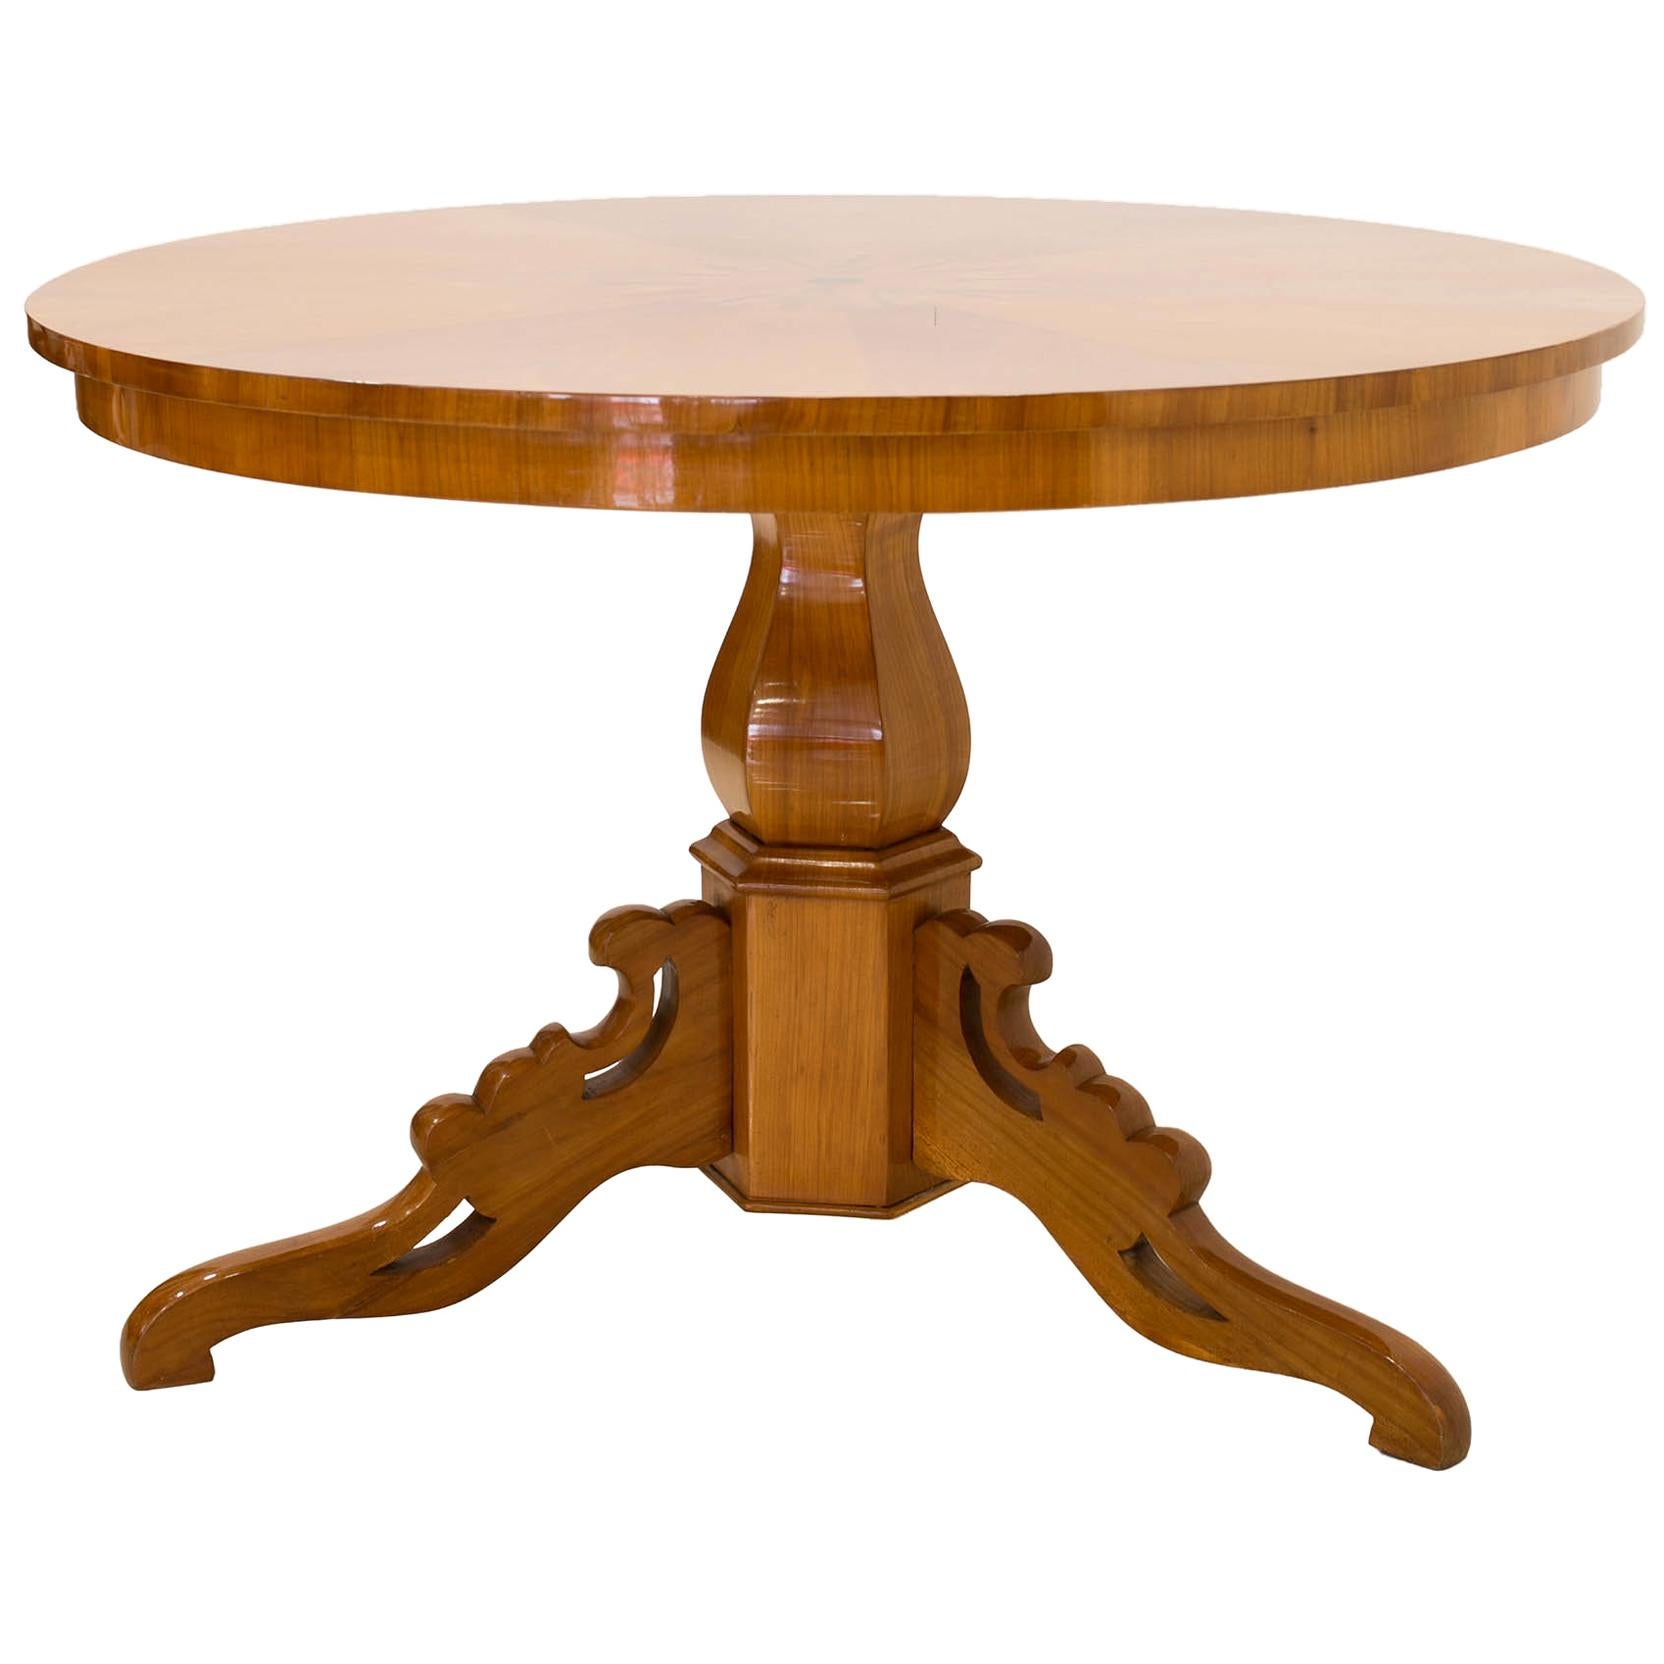 Biedermeier Round Table in Cherrywood Veneer, Germany, 19th Century